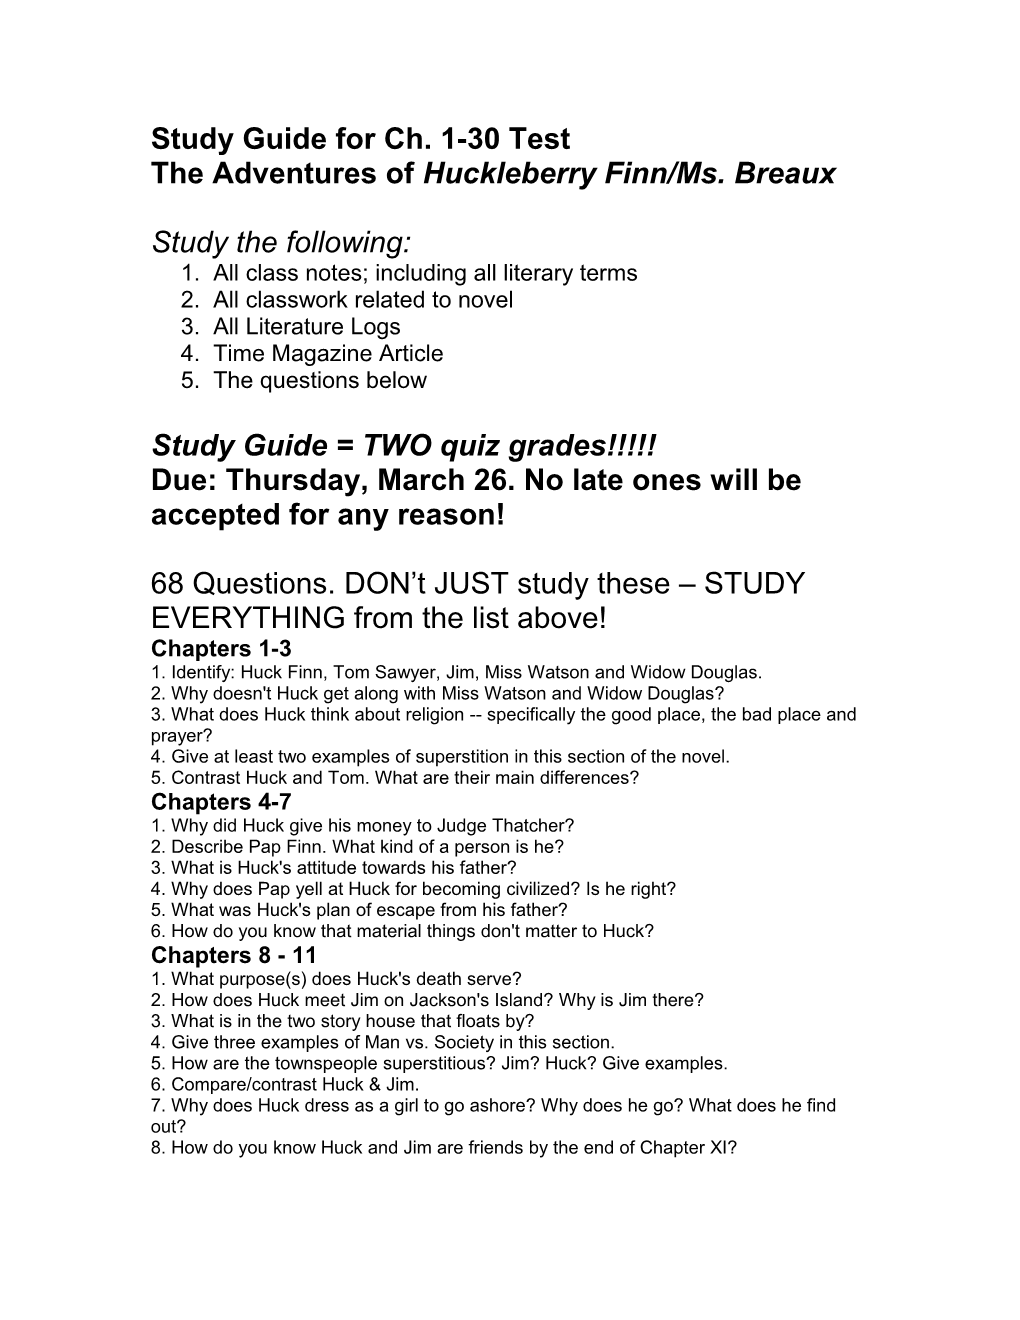 SHORT ANSWER STUDY GUIDE QUESTIONS - Huckleberry Finn